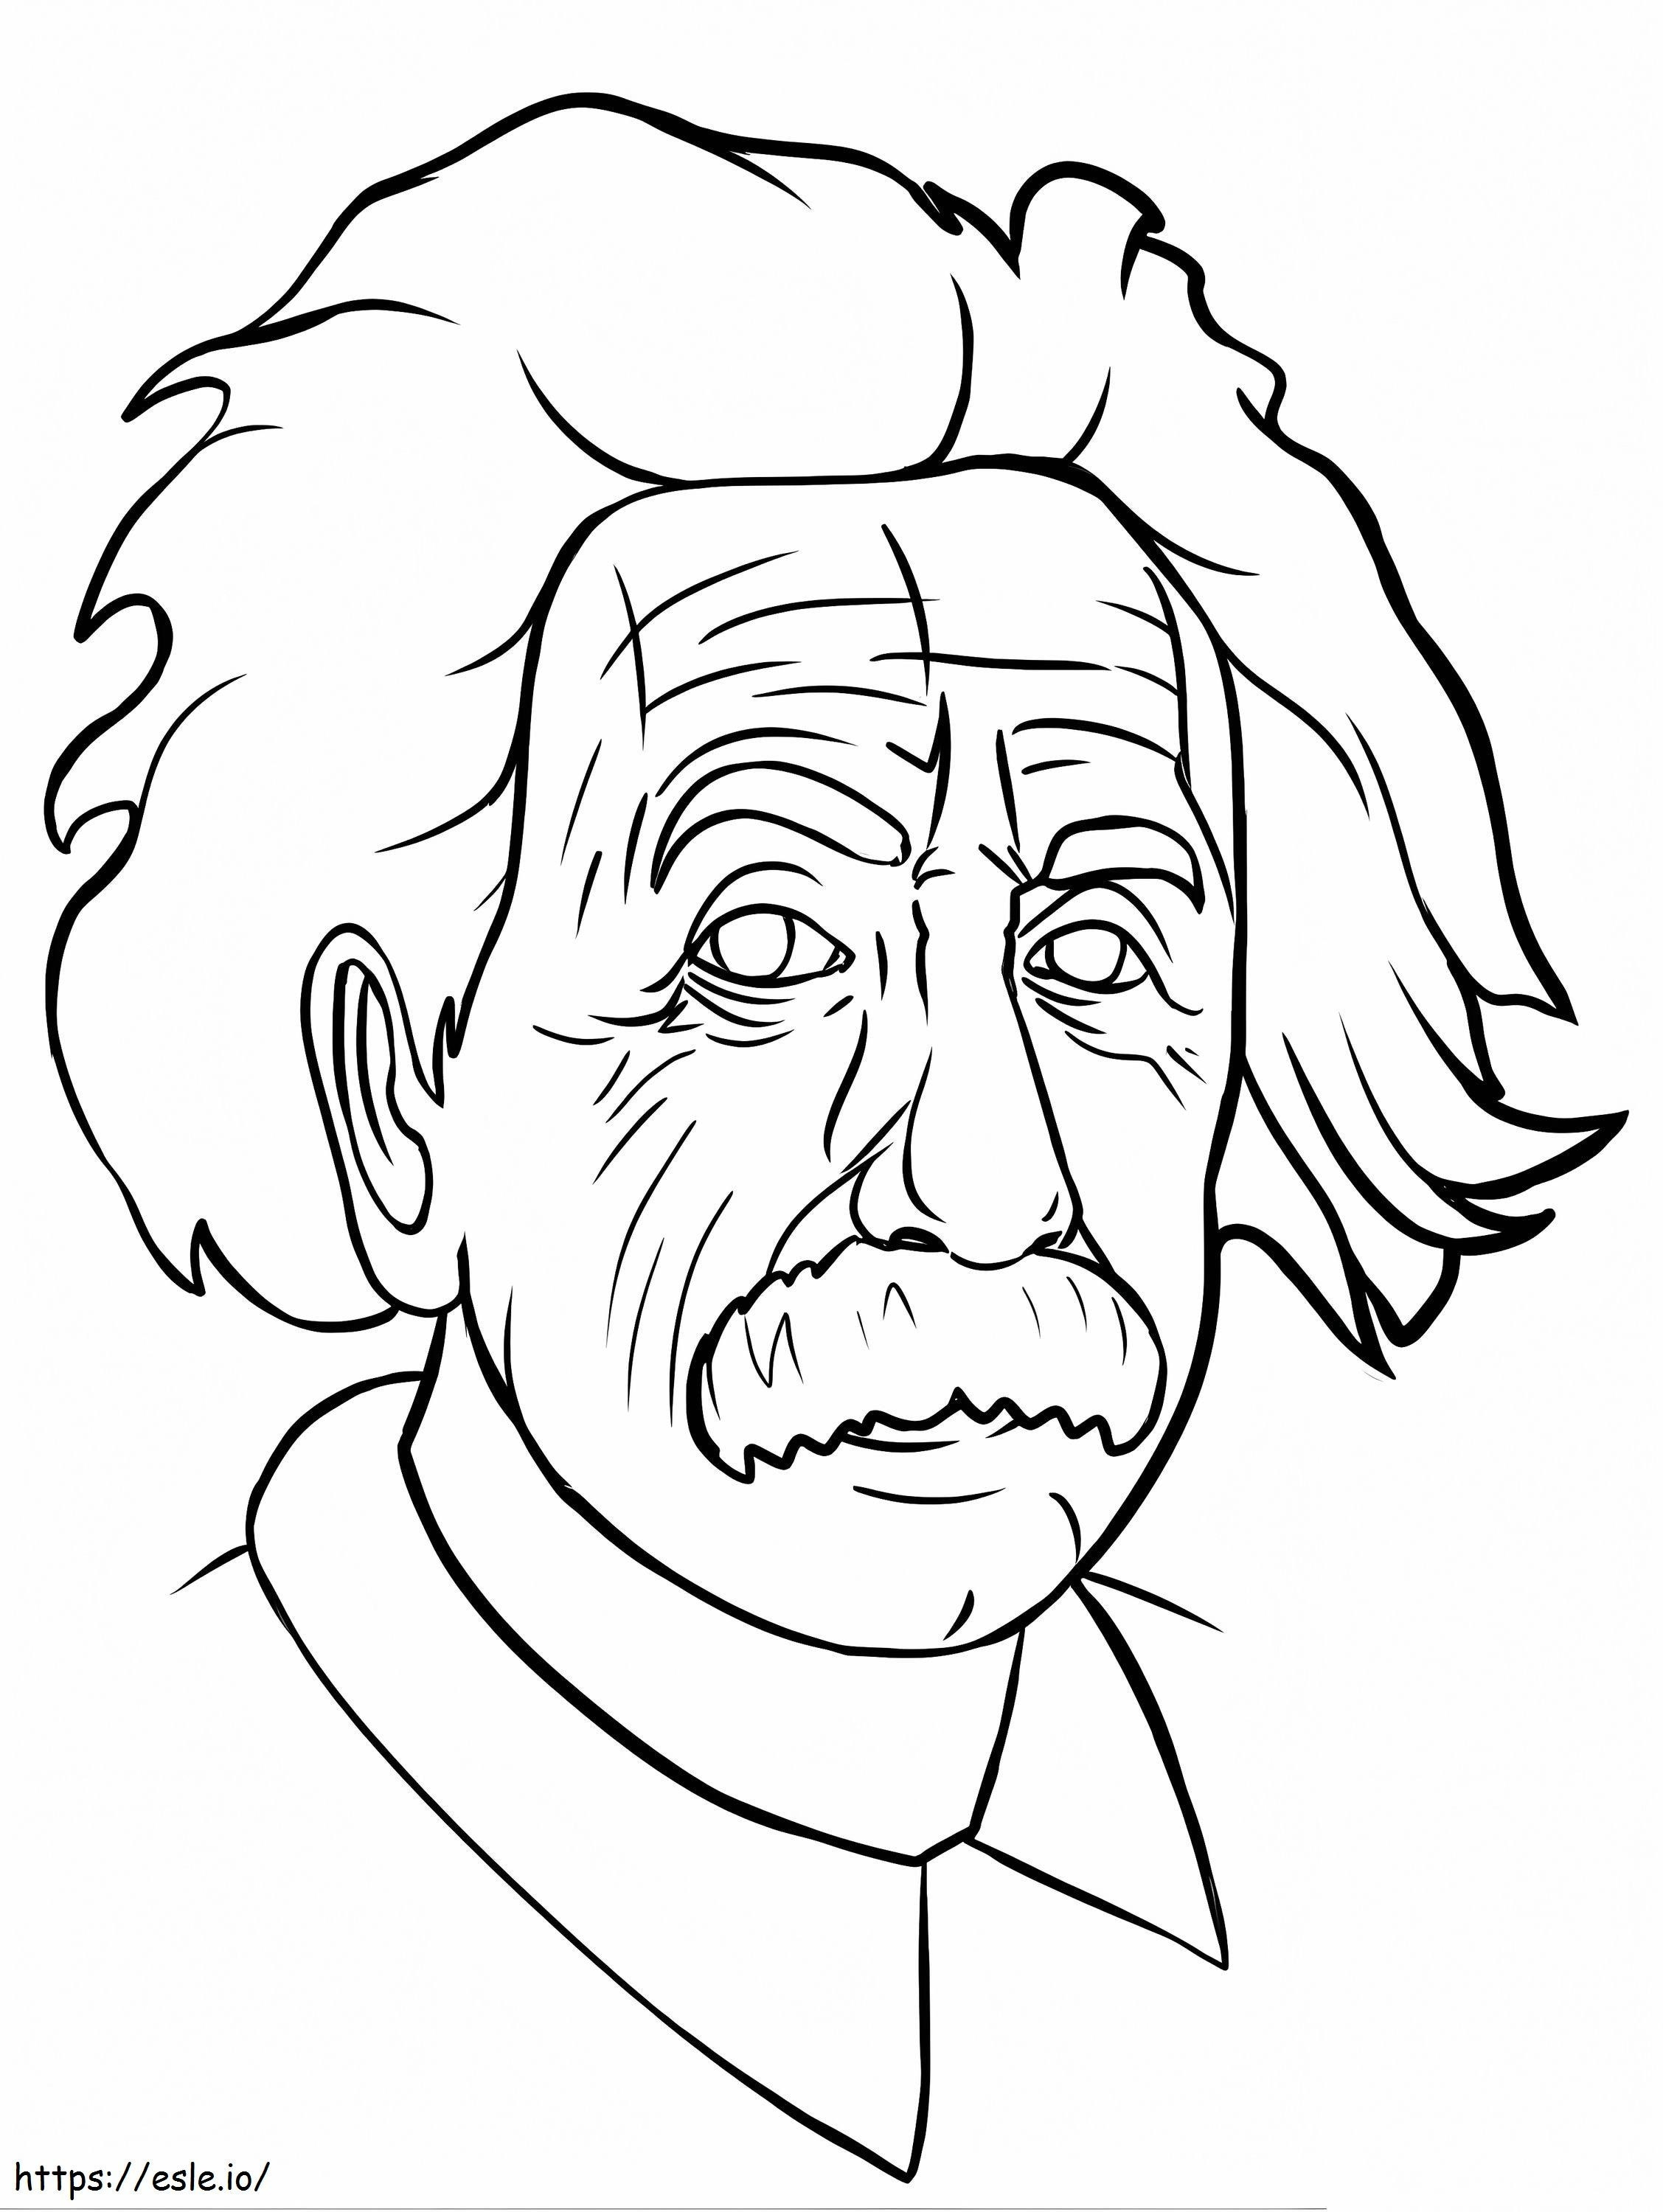 Einsteins Gesicht ausmalbilder